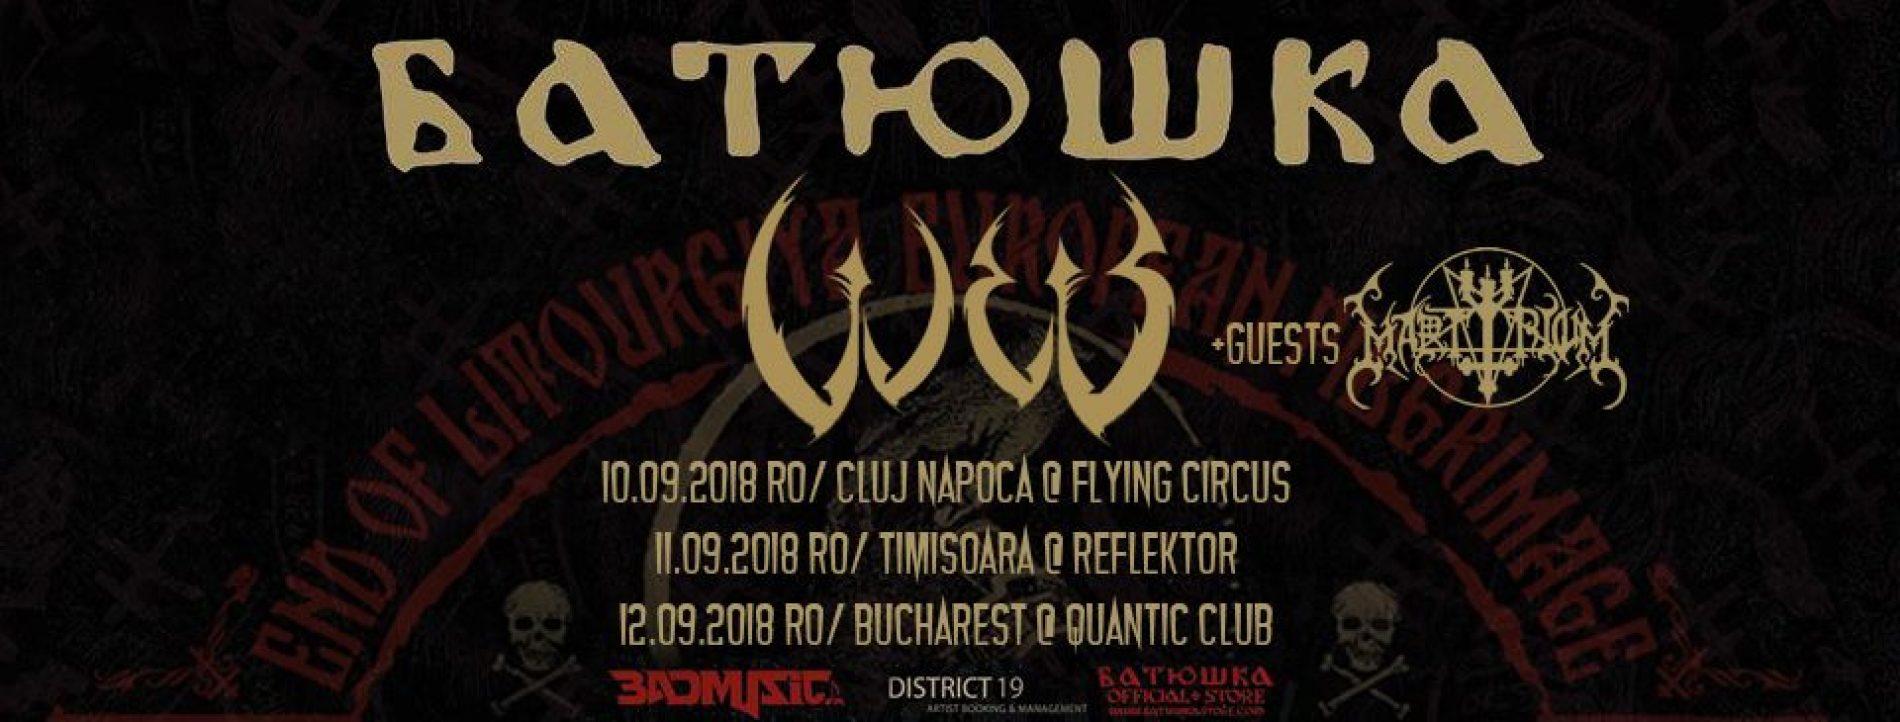 Dark metaliștii de la W.E.B. concertează în România alături de Batushka